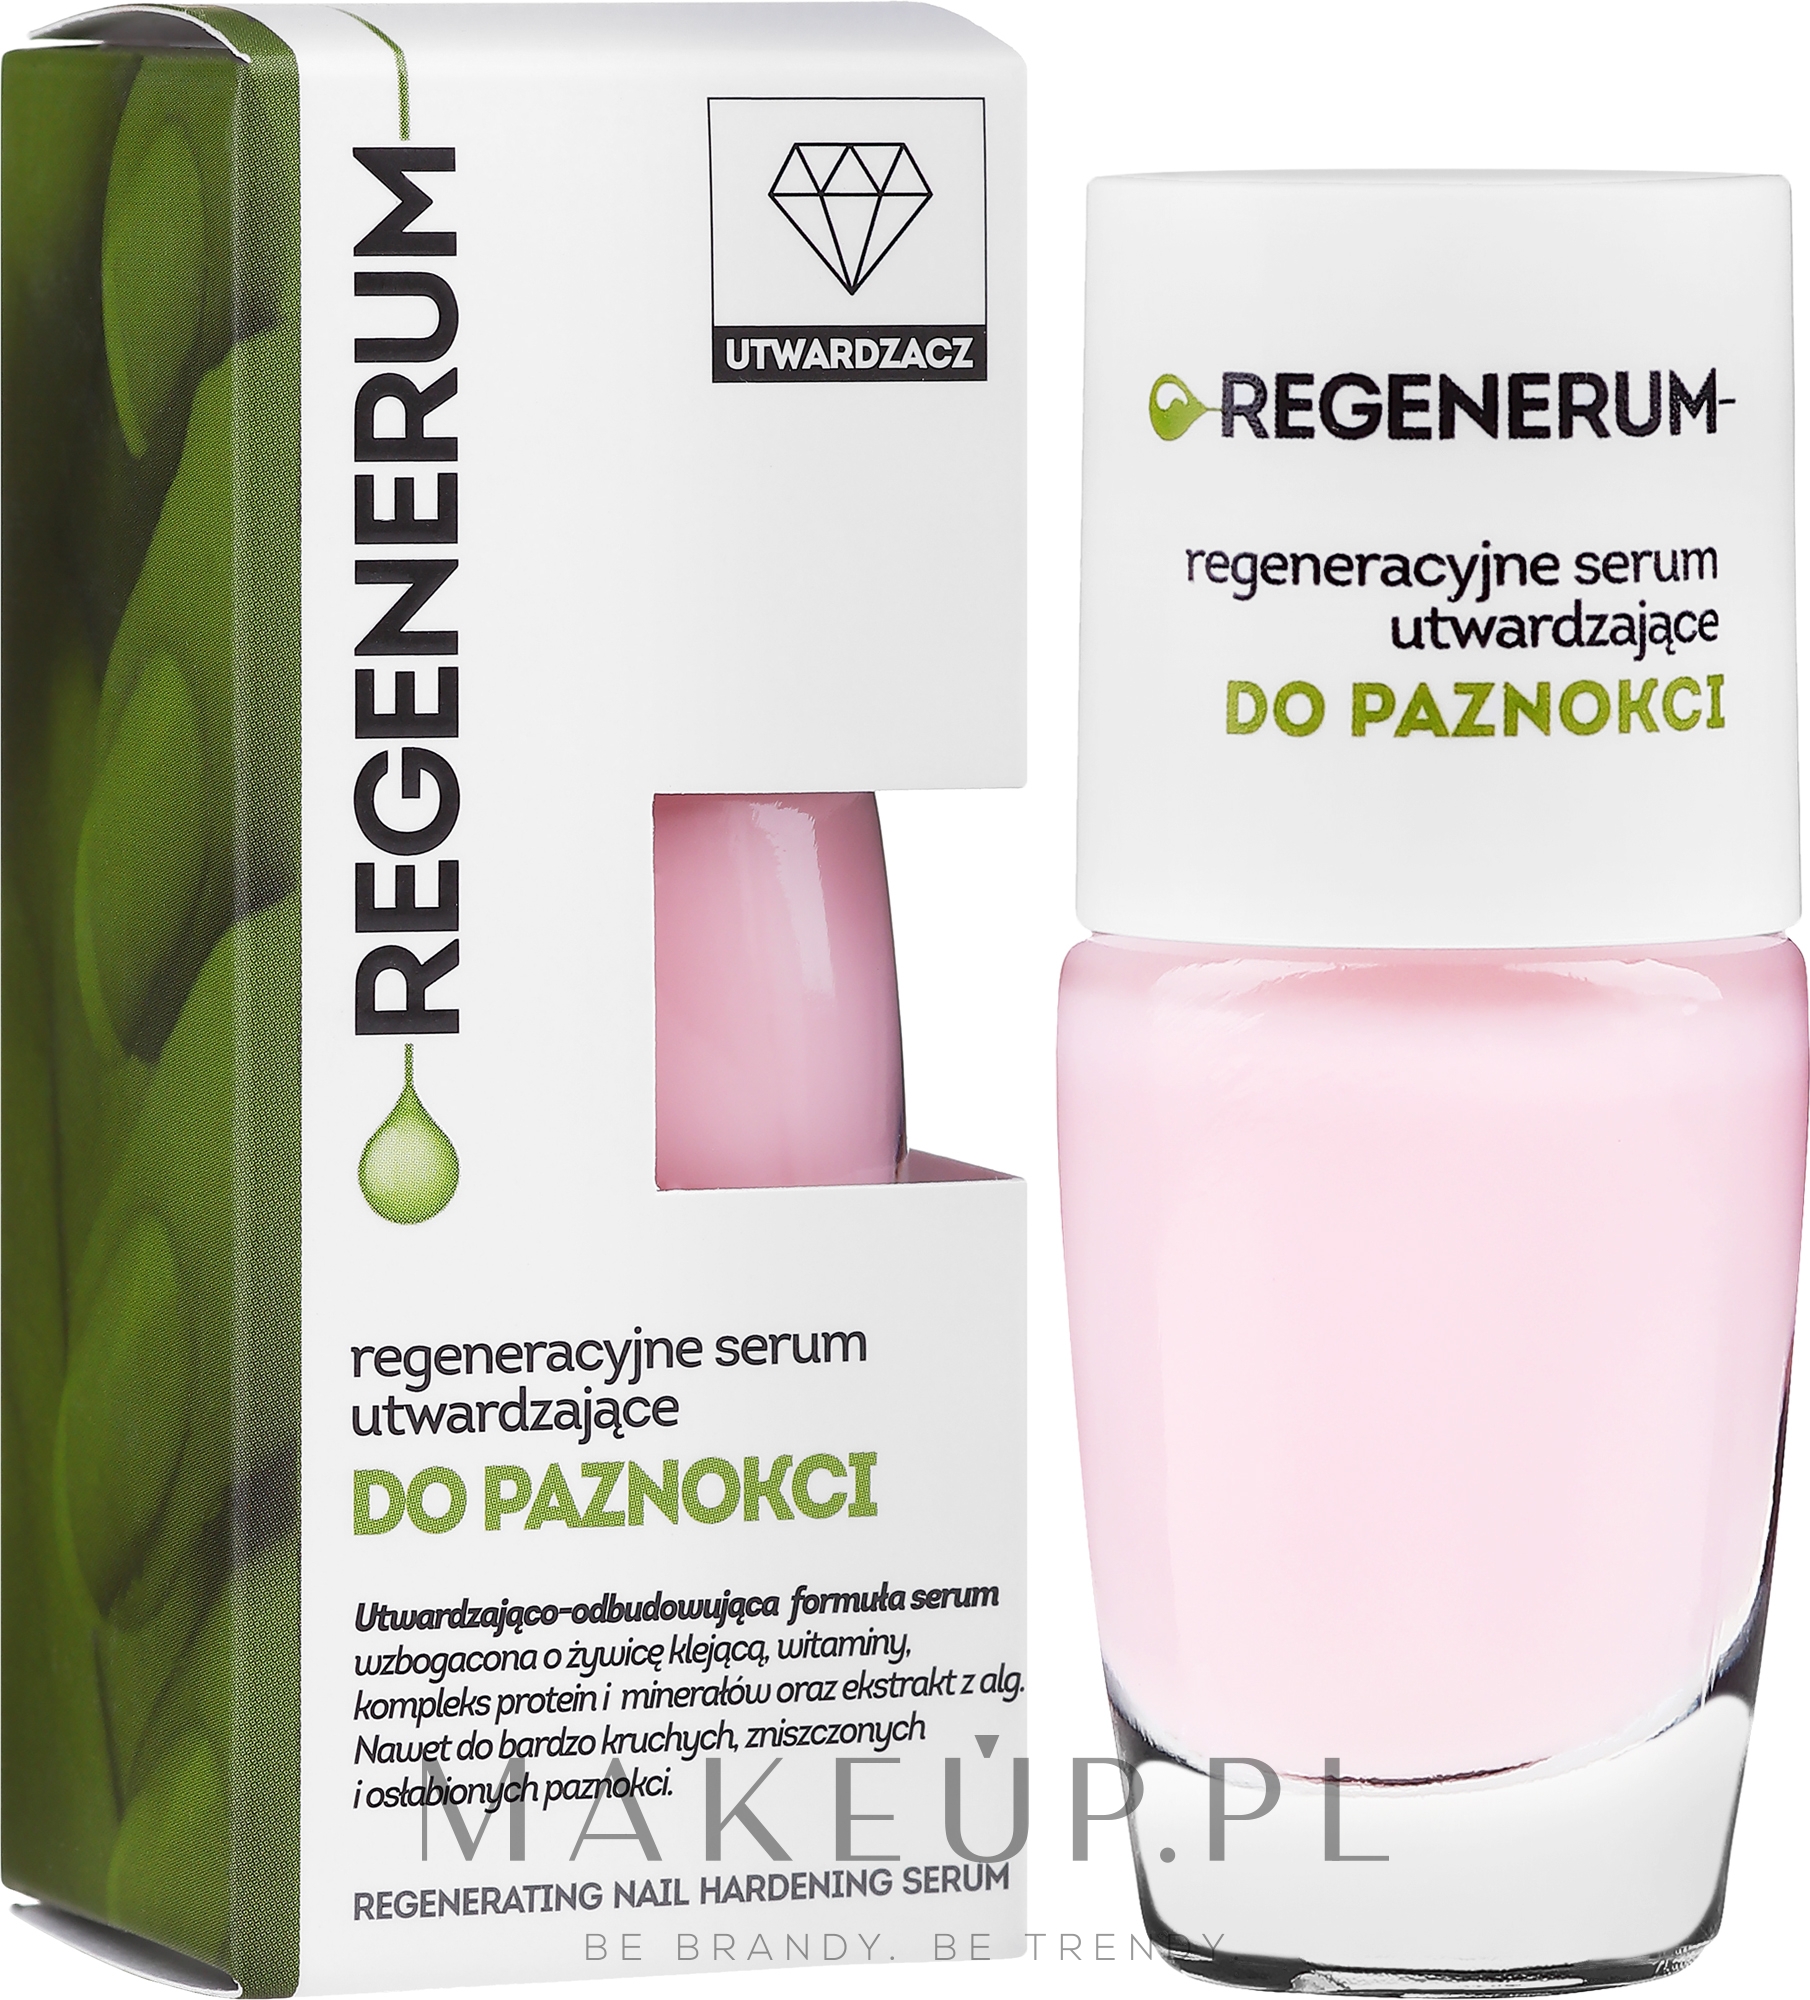 Regeneracyjne serum utwardzające do paznokci w lakierze - Aflofarm Regenerum Serum — Zdjęcie 8 ml